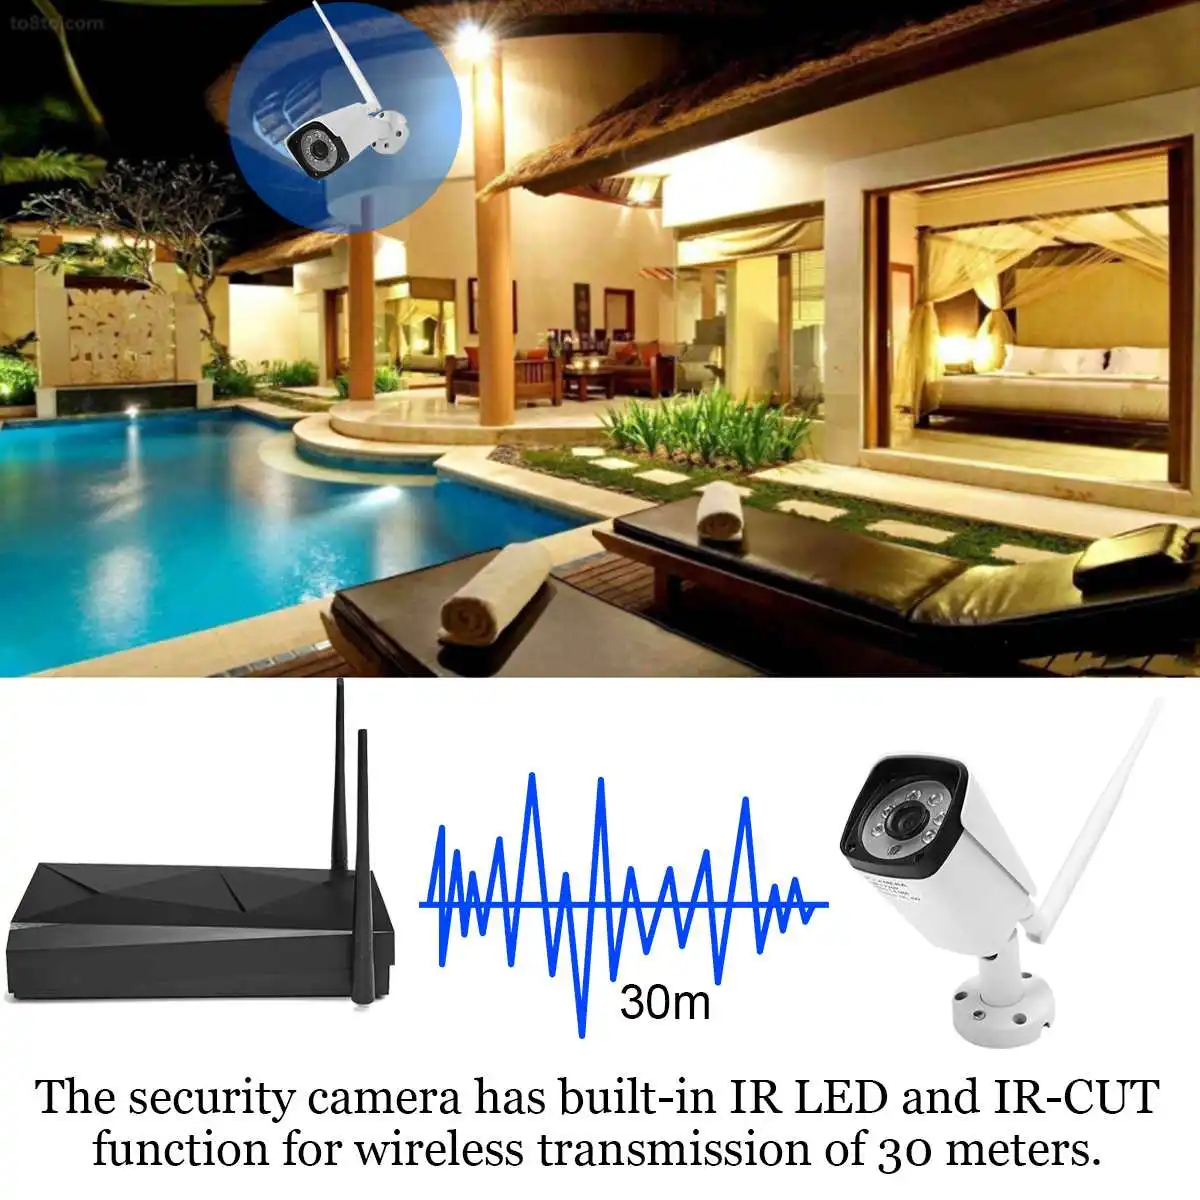 HD 1080P 4CH Wi-Fi Беспроводной NVR Наборы видеонаблюдение Системы Крытый/Напольные камеры IP обнаружения движения IP66 Водонепроницаемый CCTV